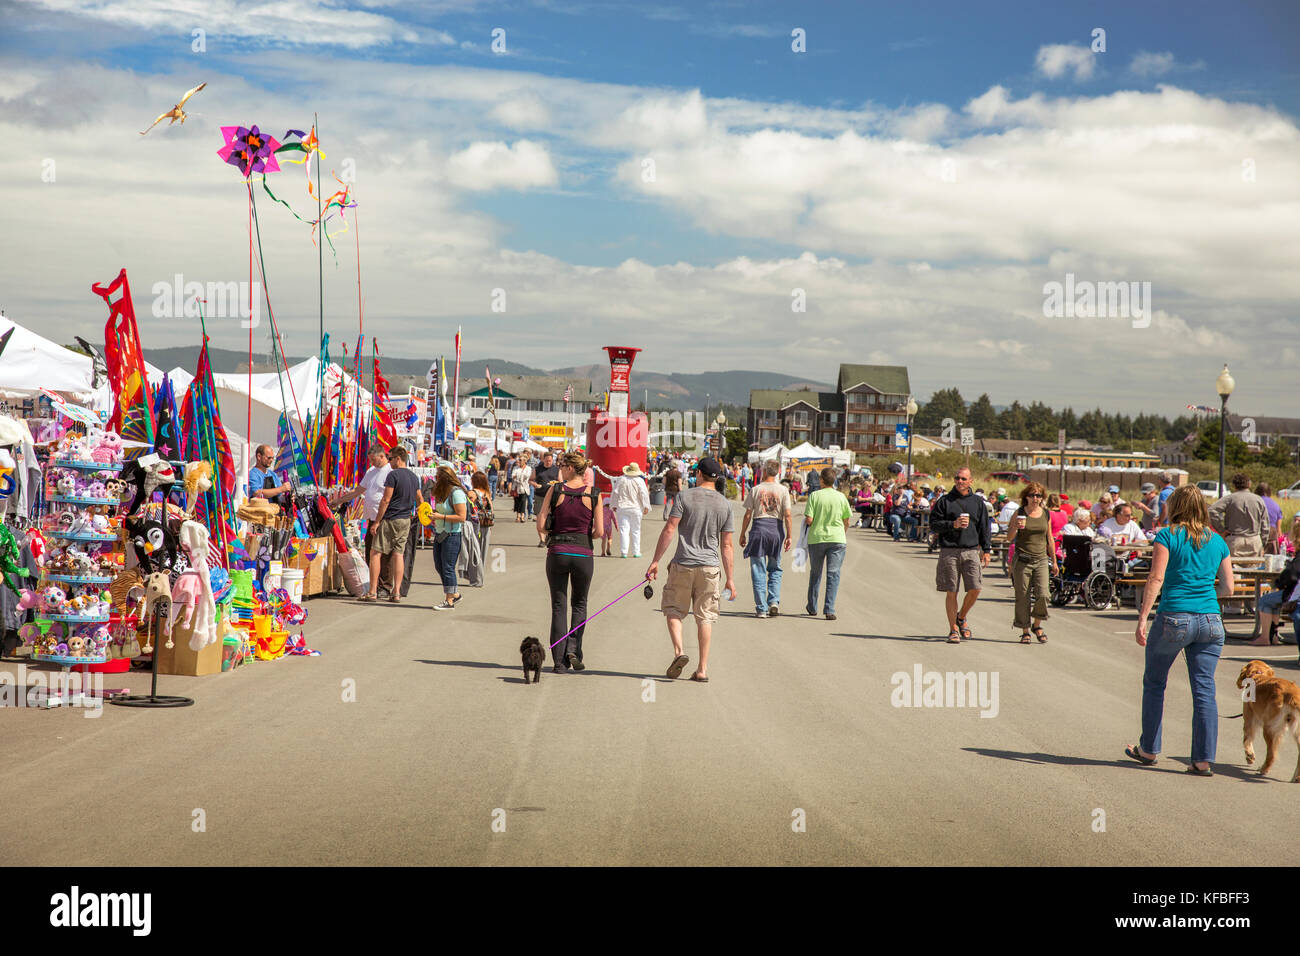 Stati Uniti d'America, nello stato di Washington, spiaggia lunga penisola, international kite festival, la fila di prodotti alimentari e fornitori di kite a kite festival Foto Stock